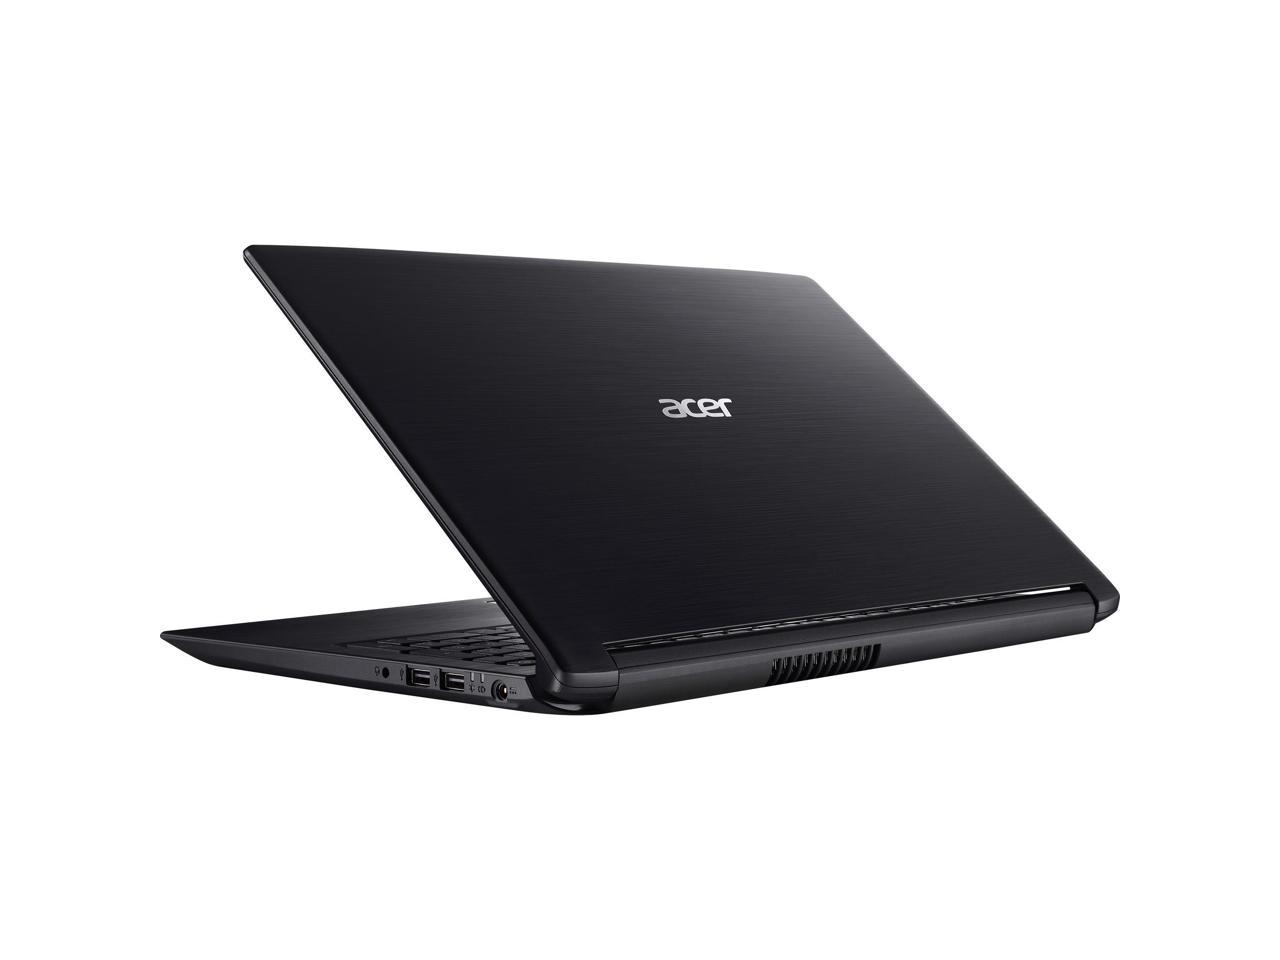 Acer Aspire 3 A315-53-55Y1 15.6" Laptop i5-8250U 4GB 16GB 1TB HDD W10H